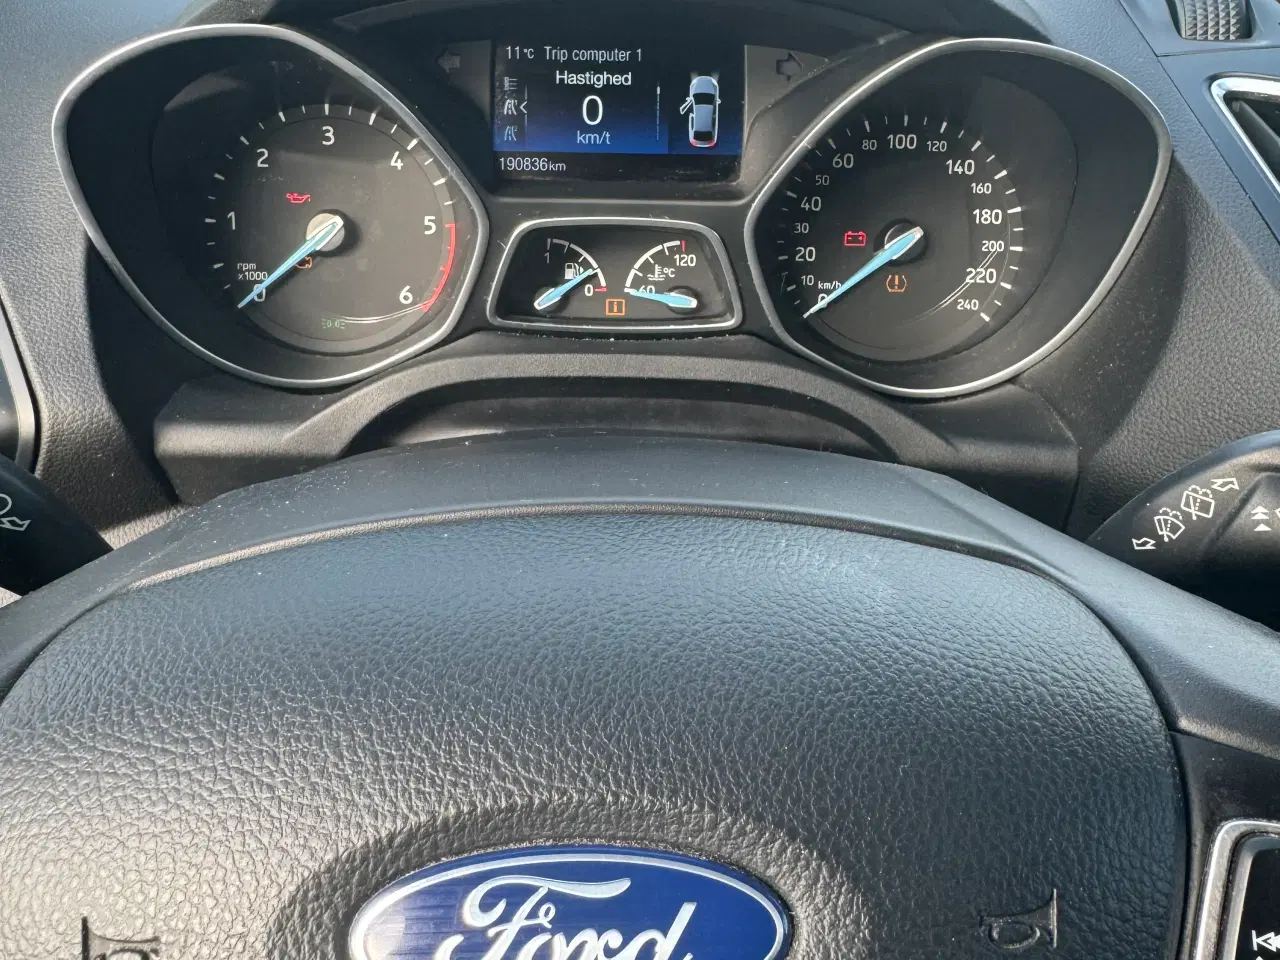 Billede 2 - Ford C-max, 190.000km. Bluetooth, stor info skærm